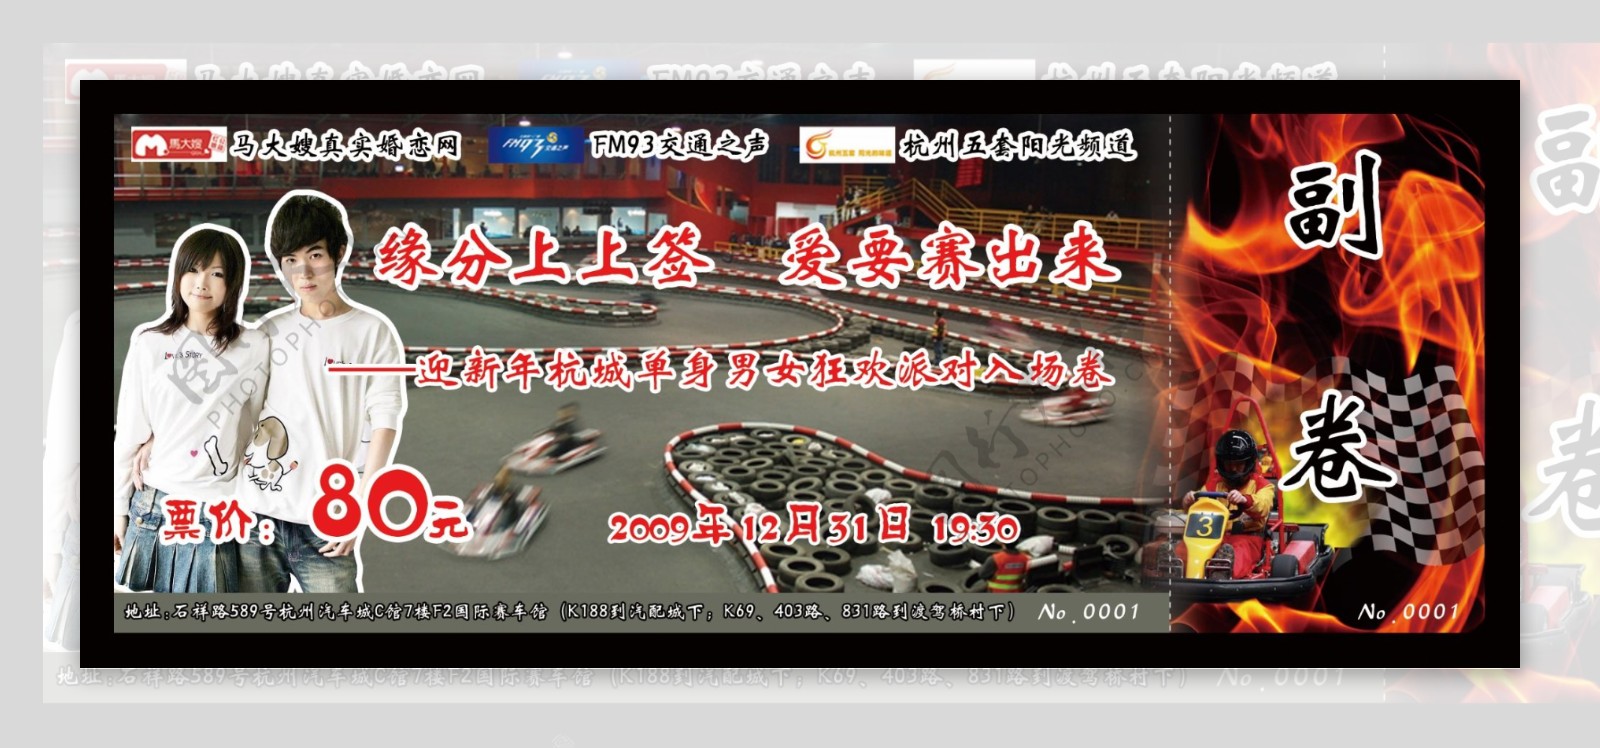 2009杭州岁末卡丁车千人交友活动门票正面图片